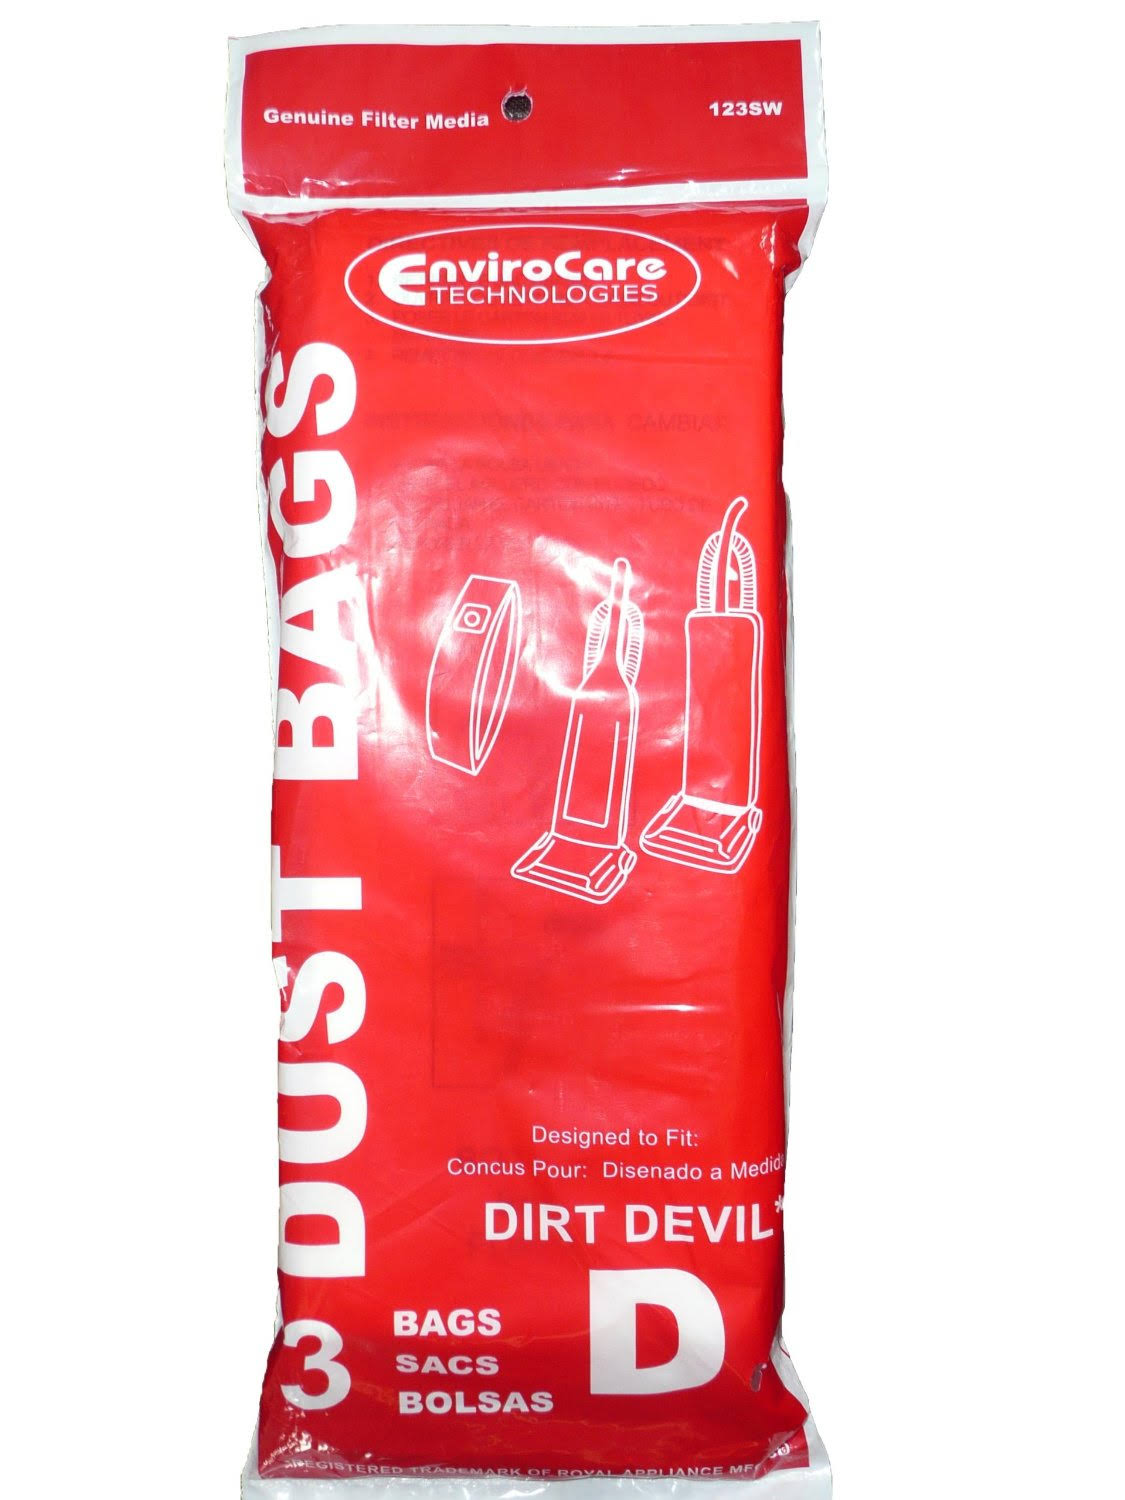 Dirt Devil Dust Bags - Type D, 3bags